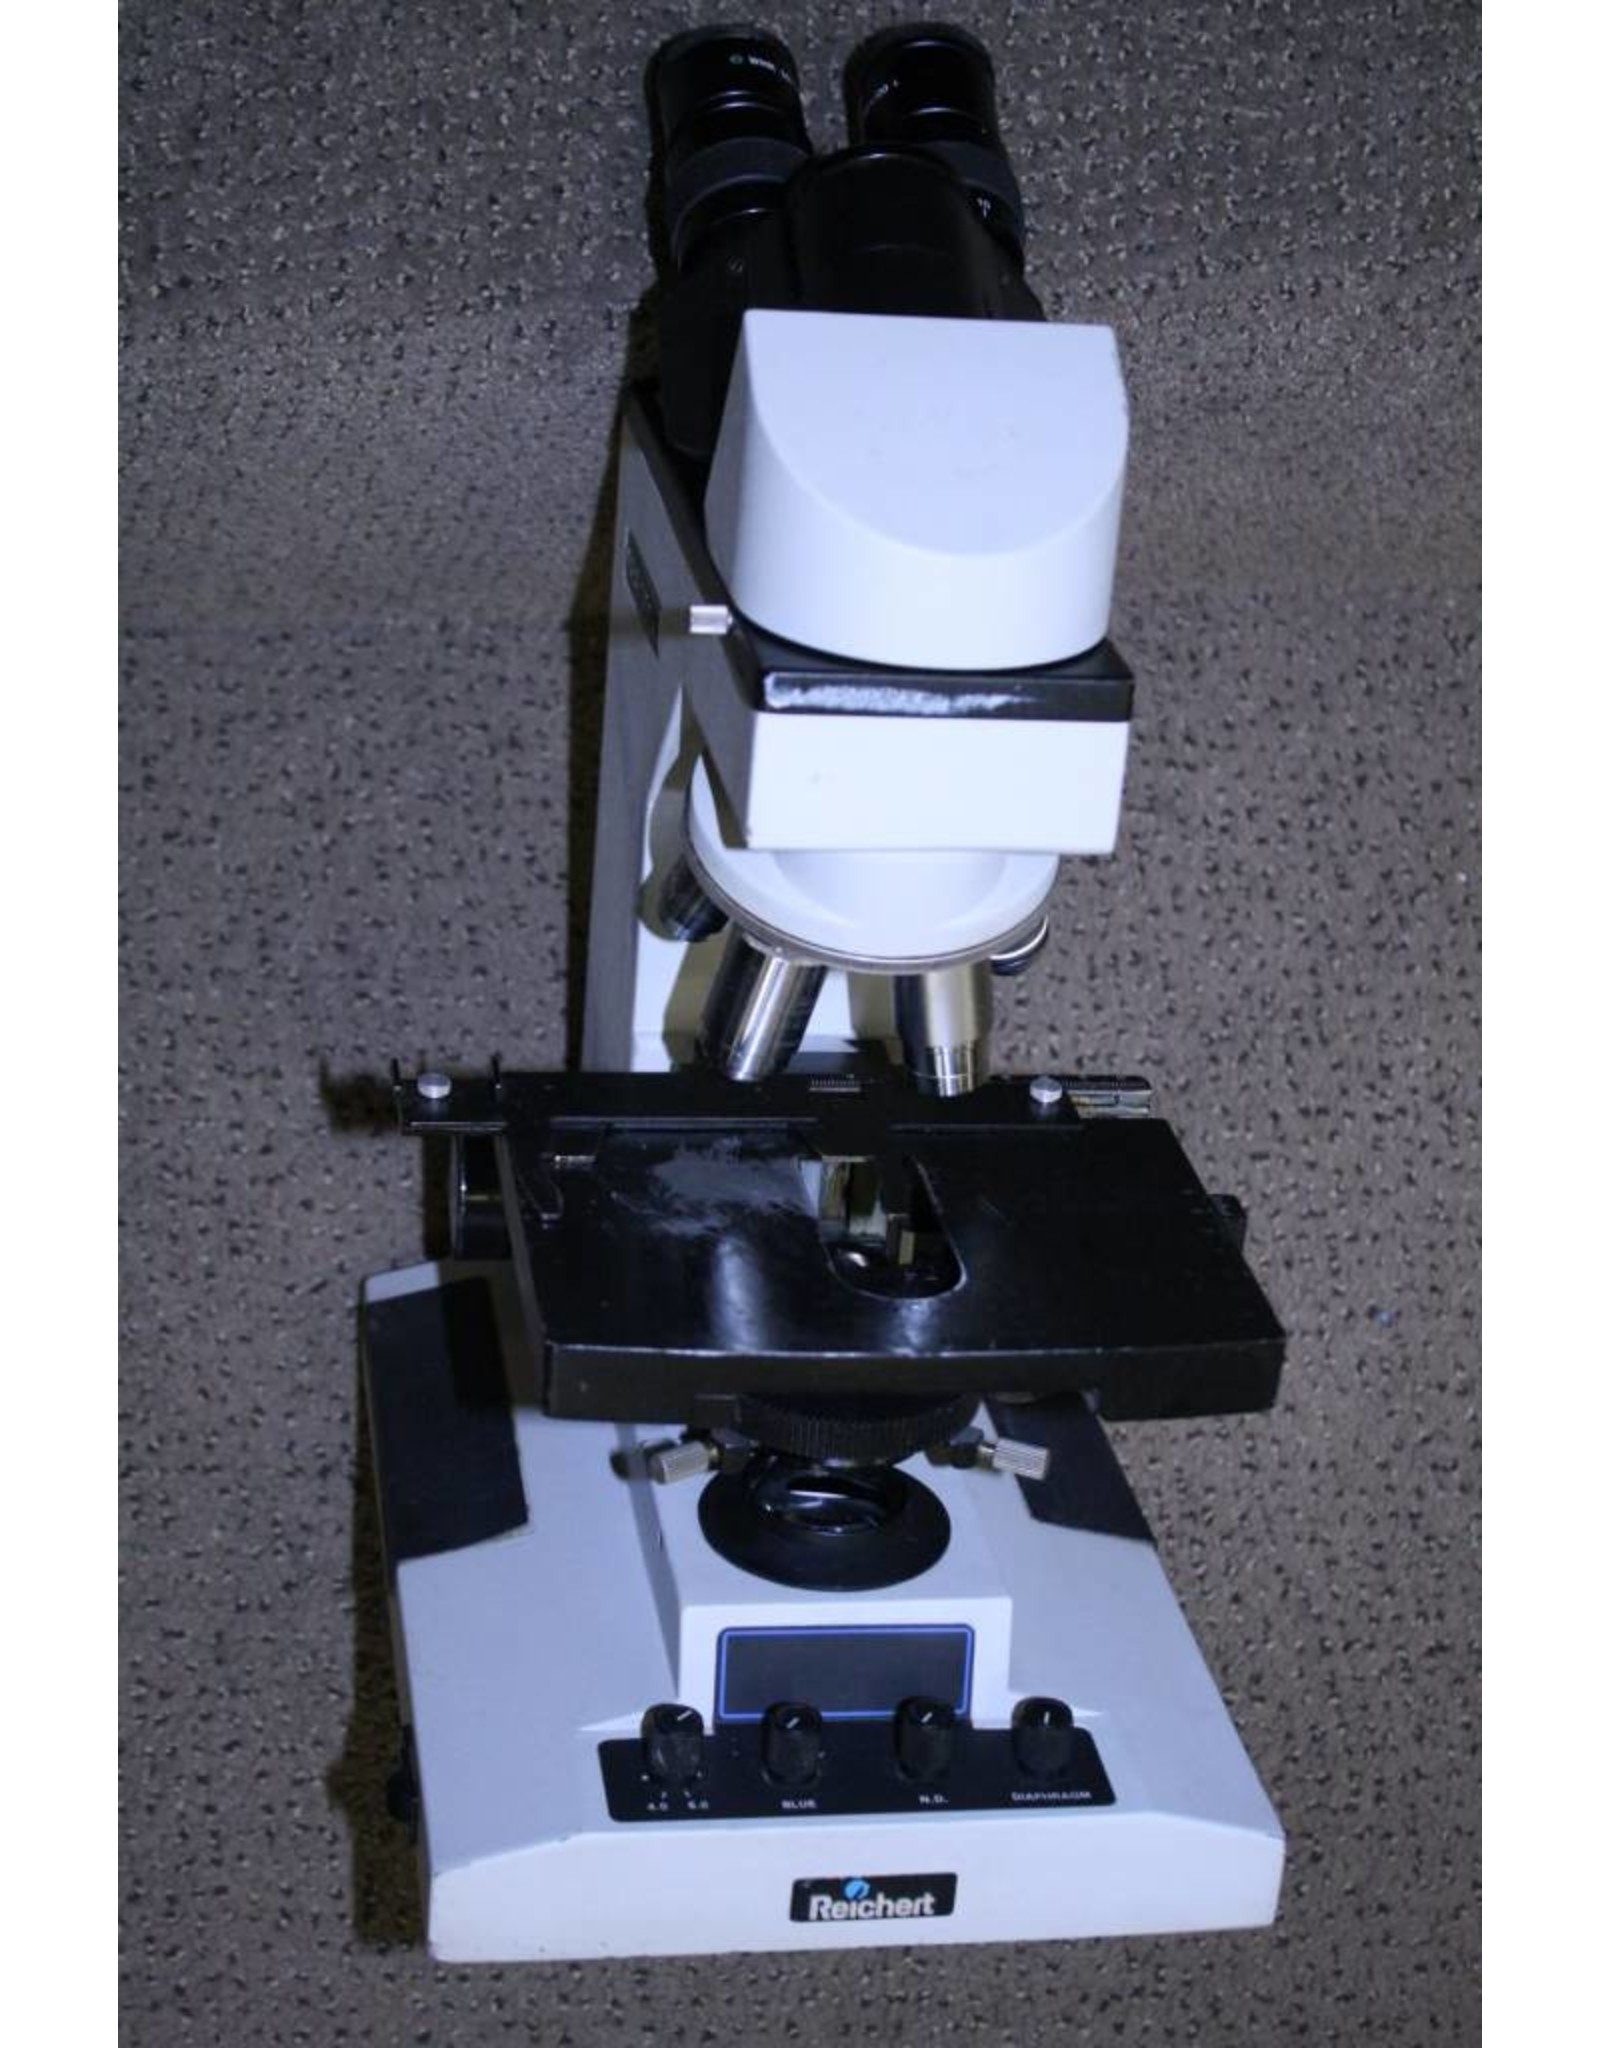 Reichert Microstar IV Model 410 Stereo Microscope